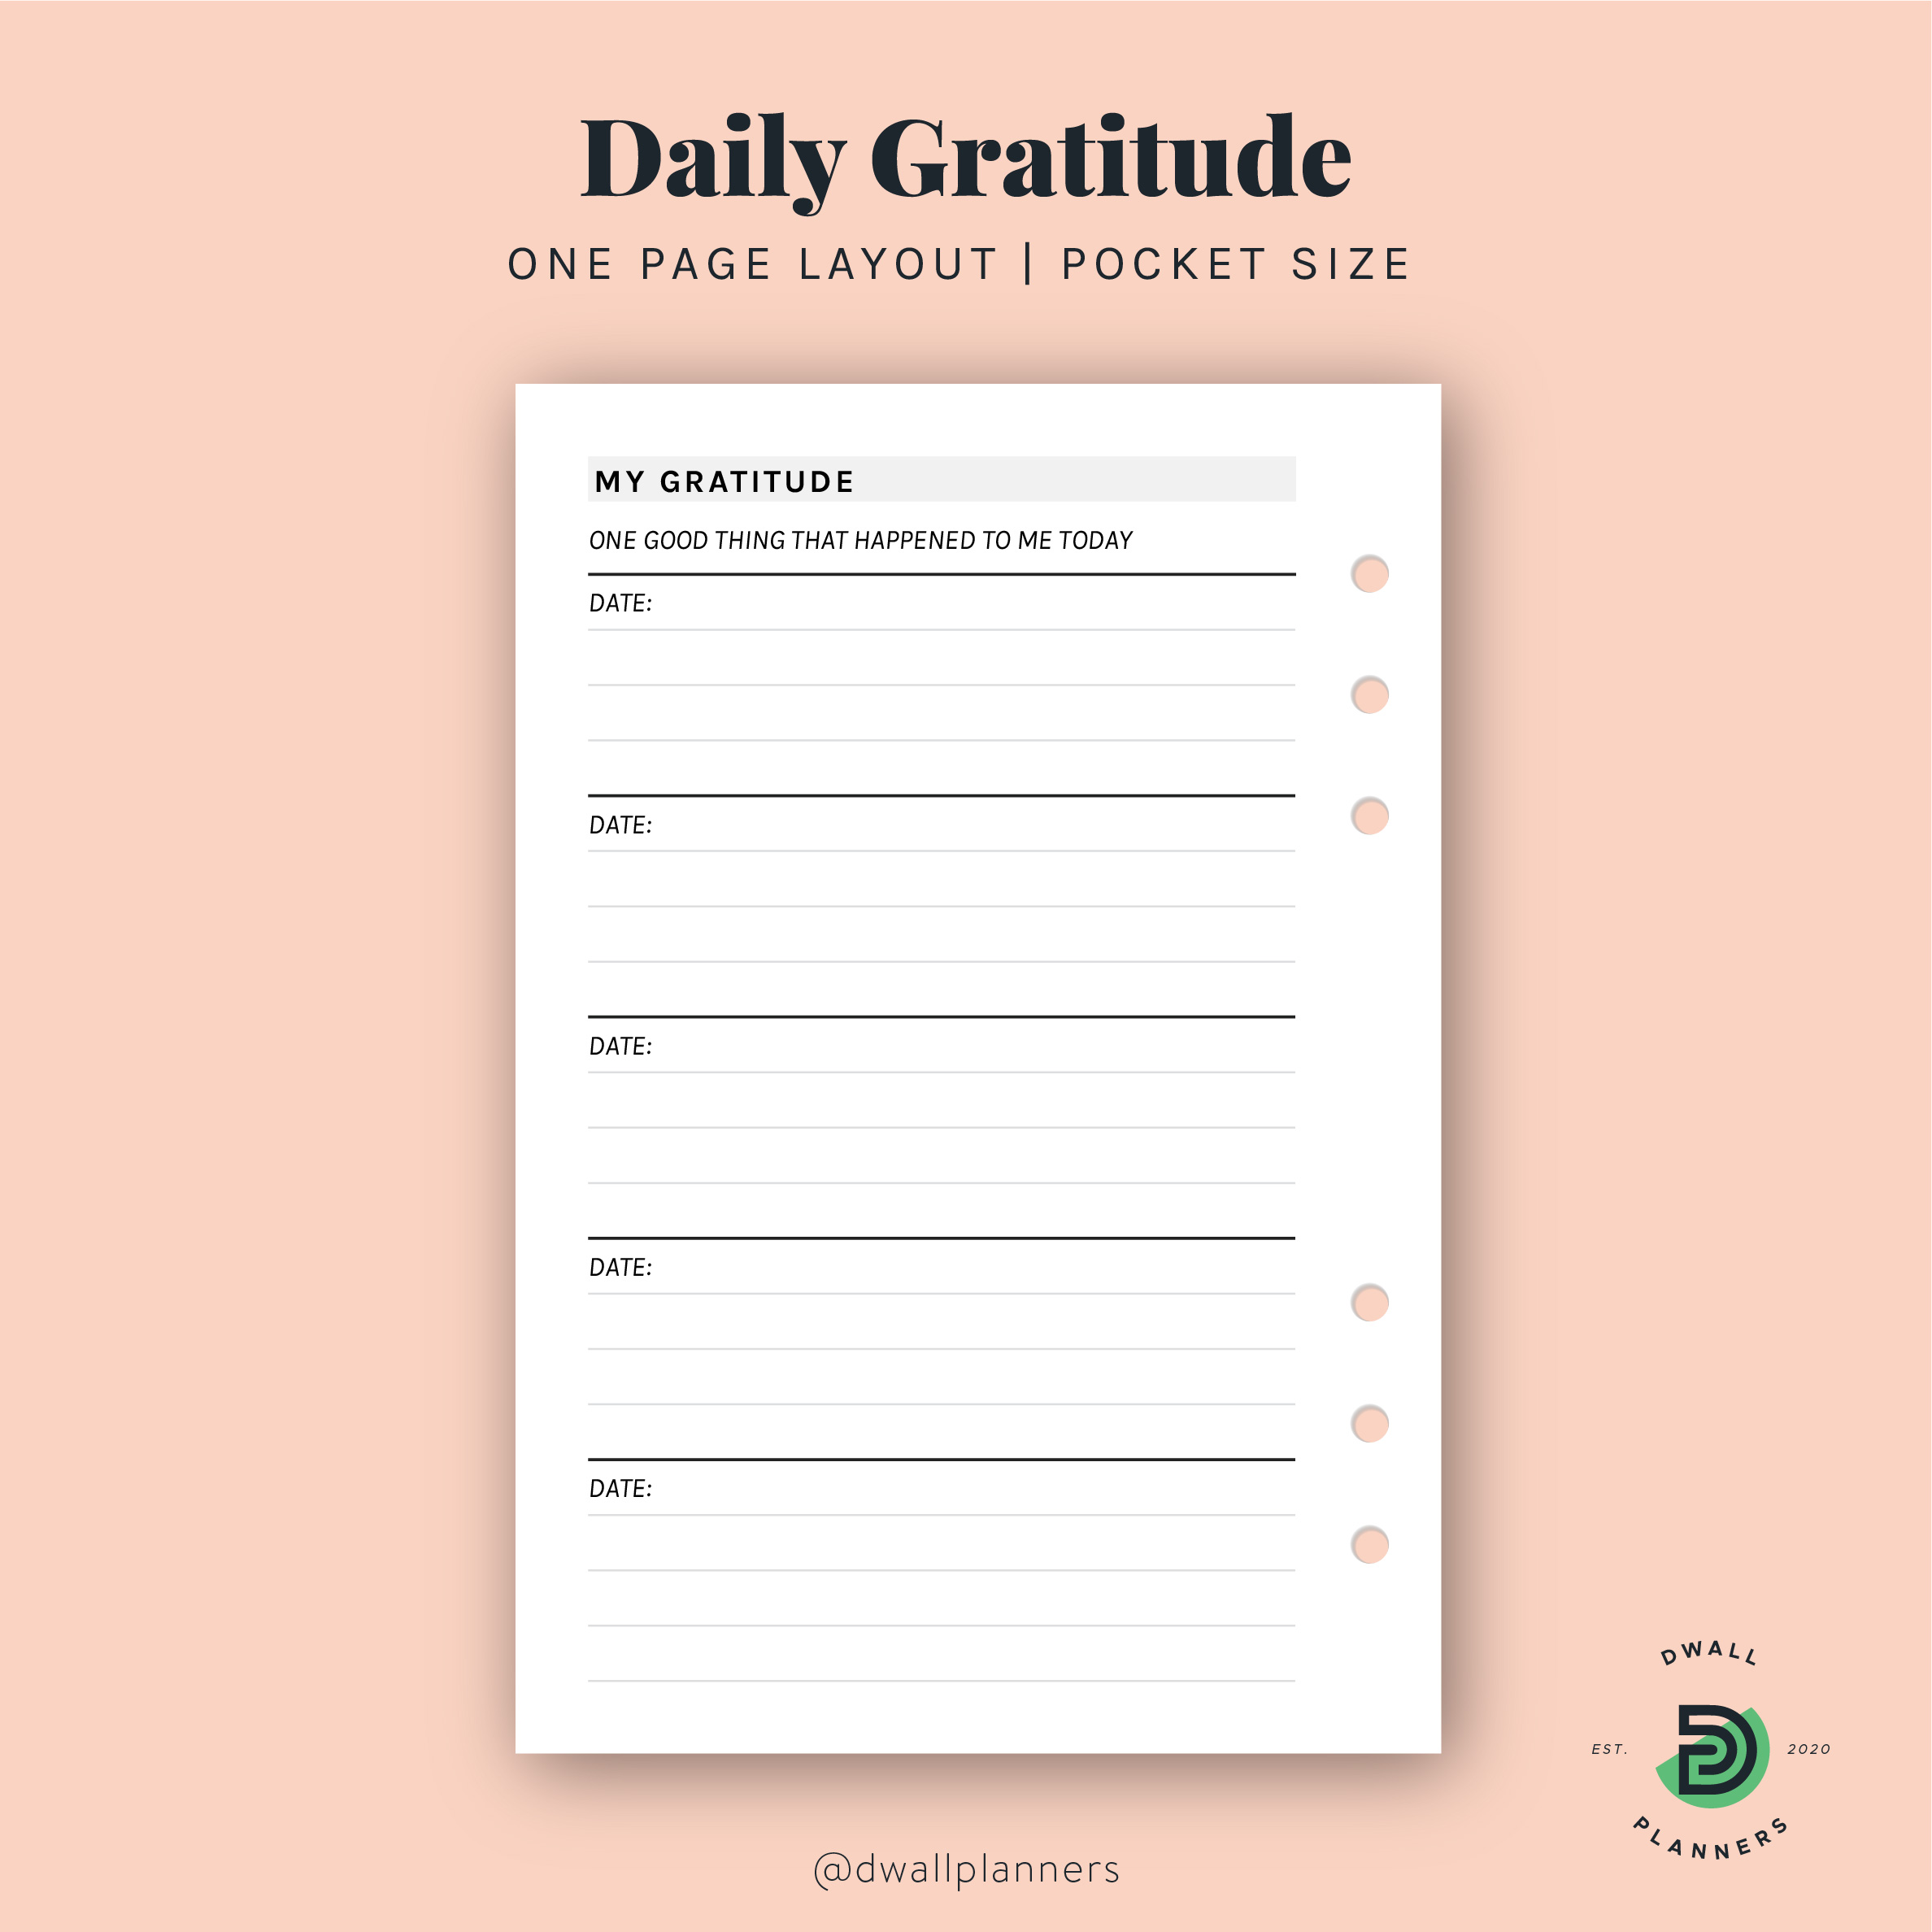 Gratitude Journal Printable BUNDLE